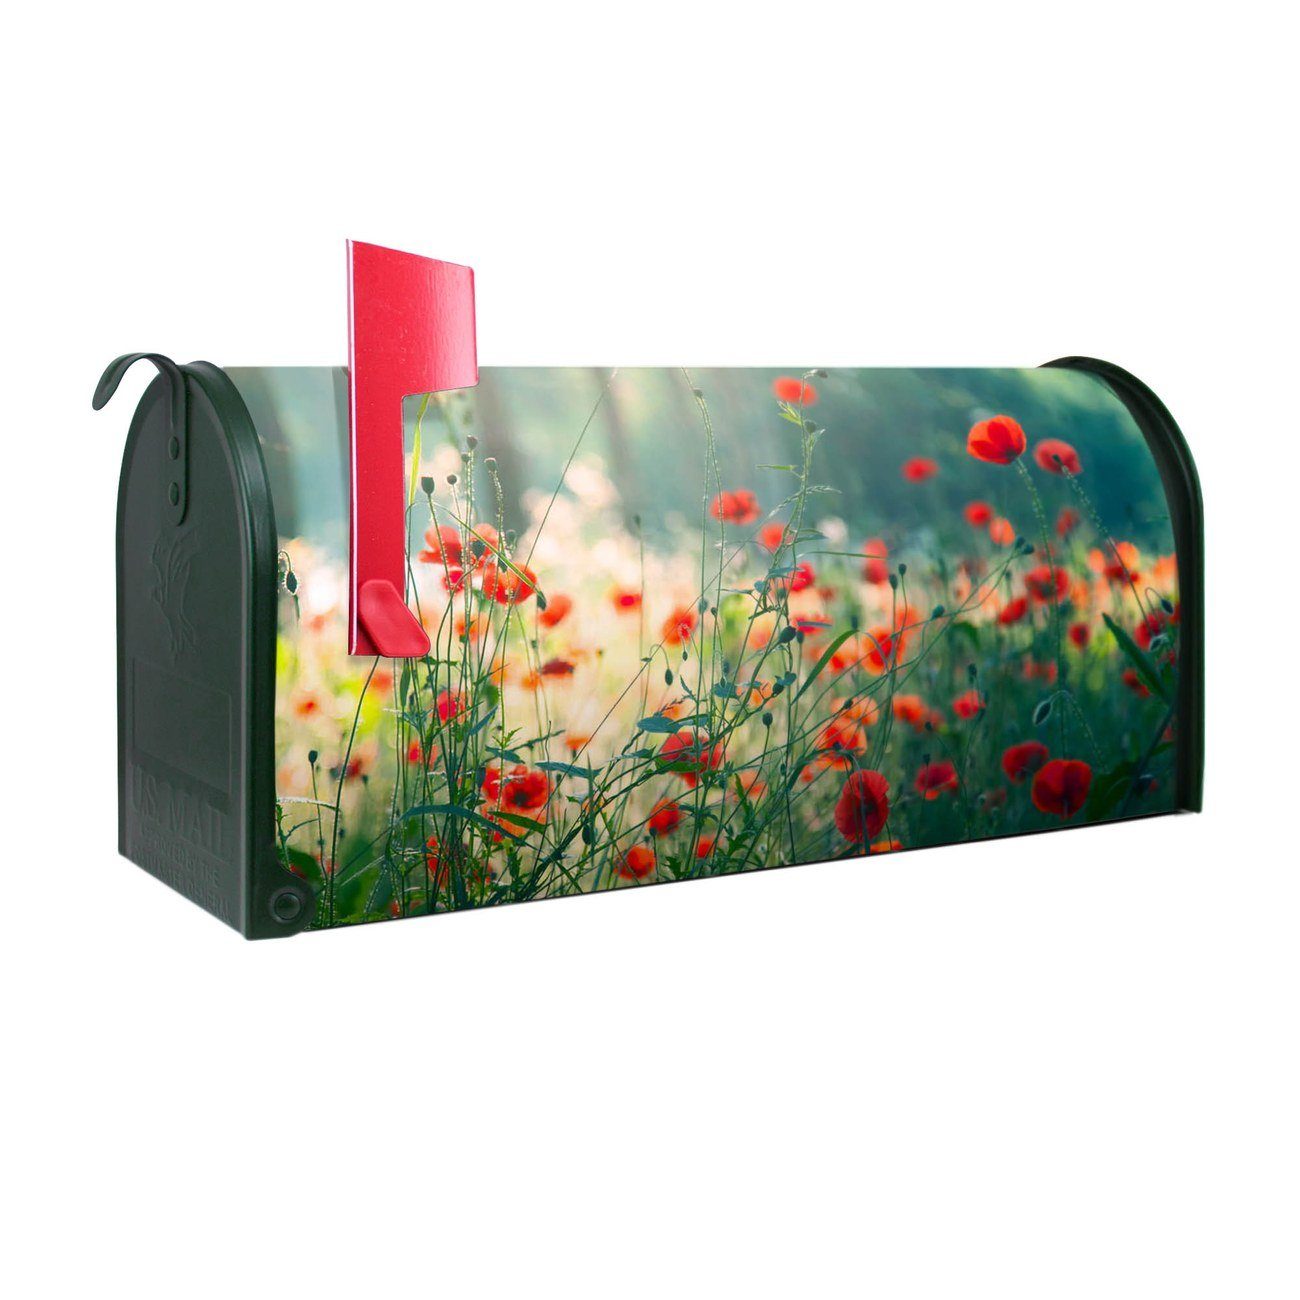 Wandhalterung Letterbox Stahl schwarz mit Motiv Kreidetafel Amerikanischer Briefkasten 51x22x17cm BANJADO US Mailbox